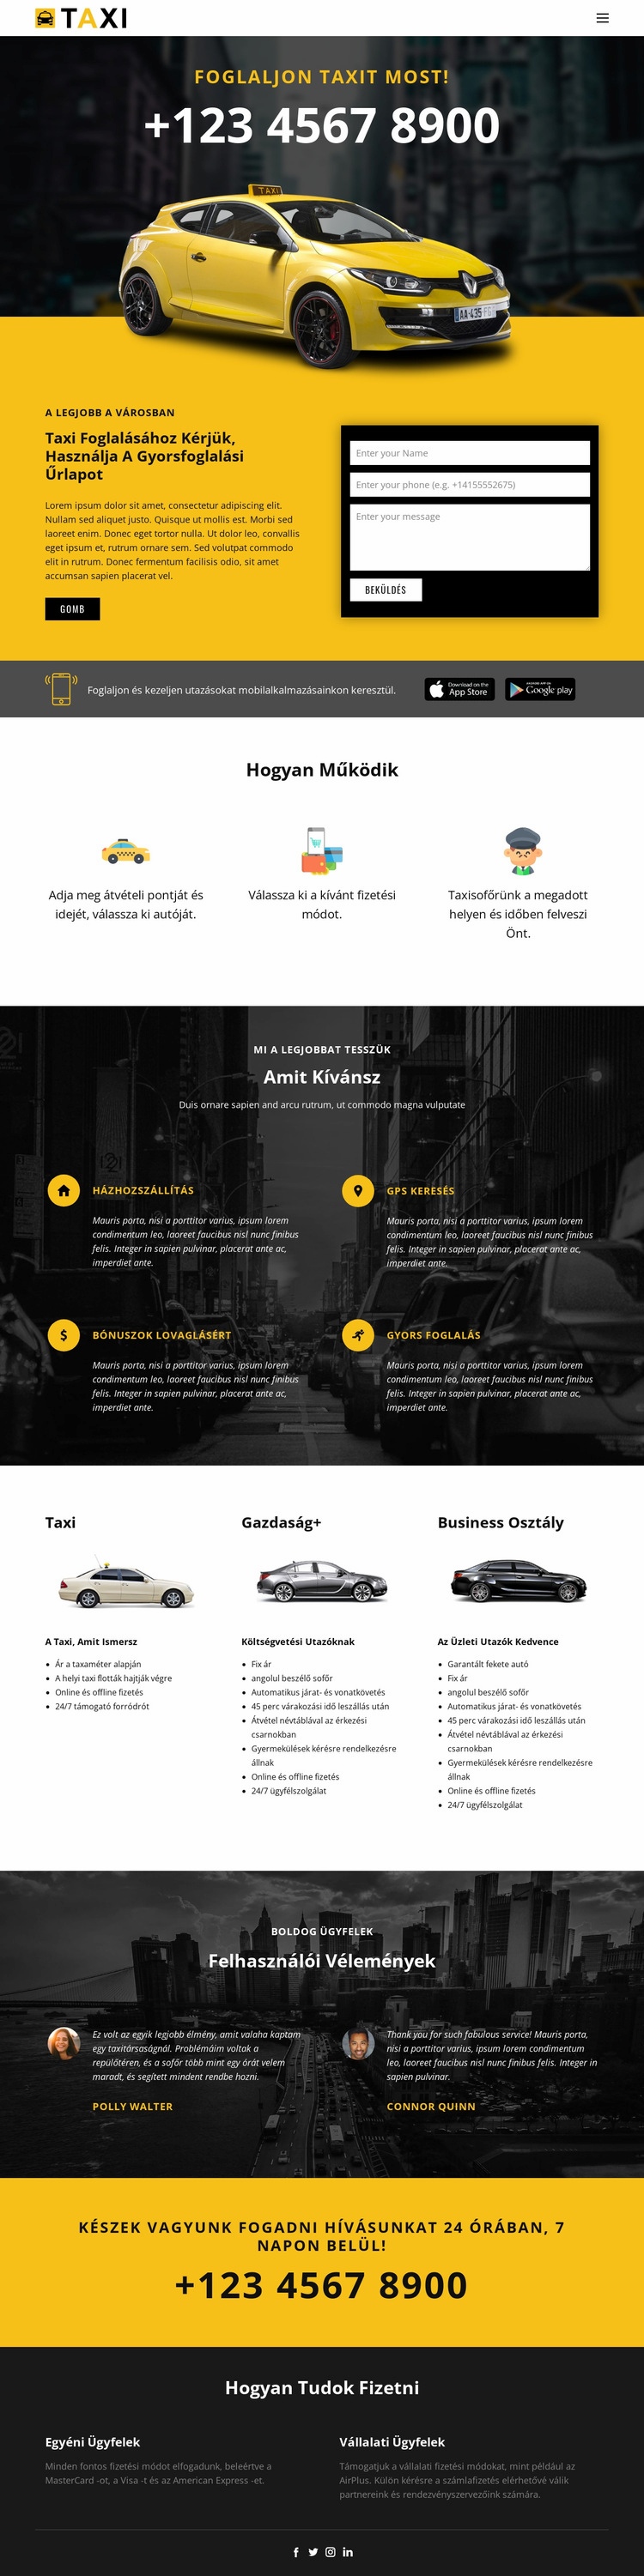 A leggyorsabb taxi autók Weboldal sablon